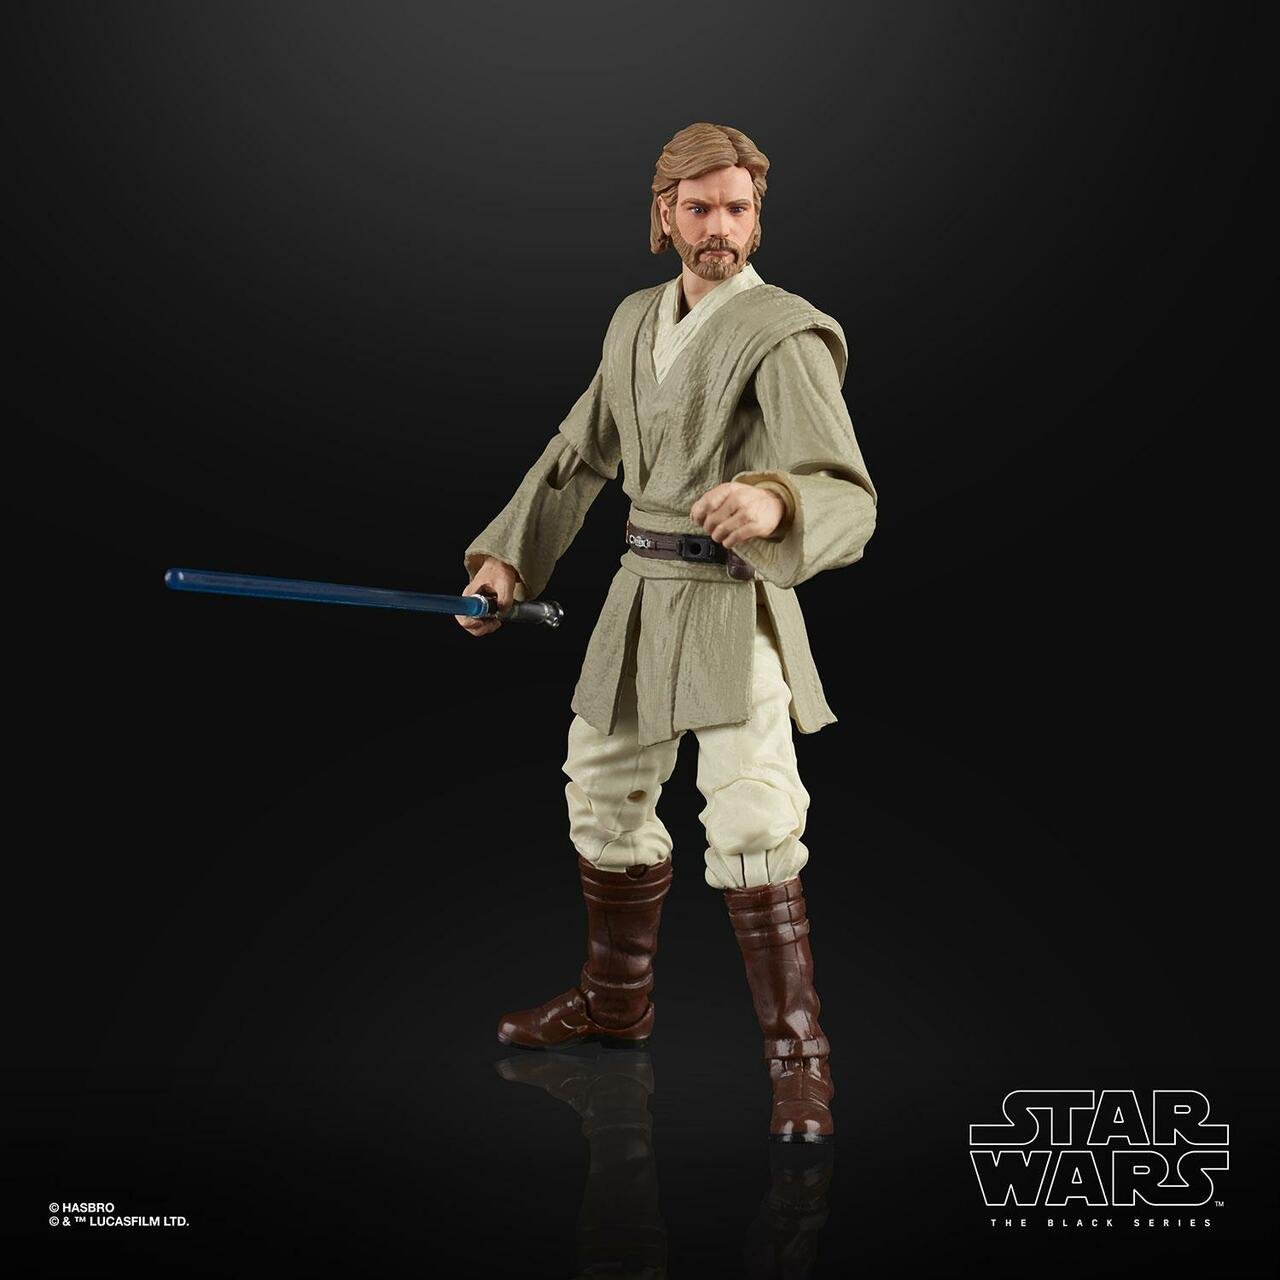 Star Wars: The Black Series 6" Obi-Wan Kenobi (Attack of the Clones)